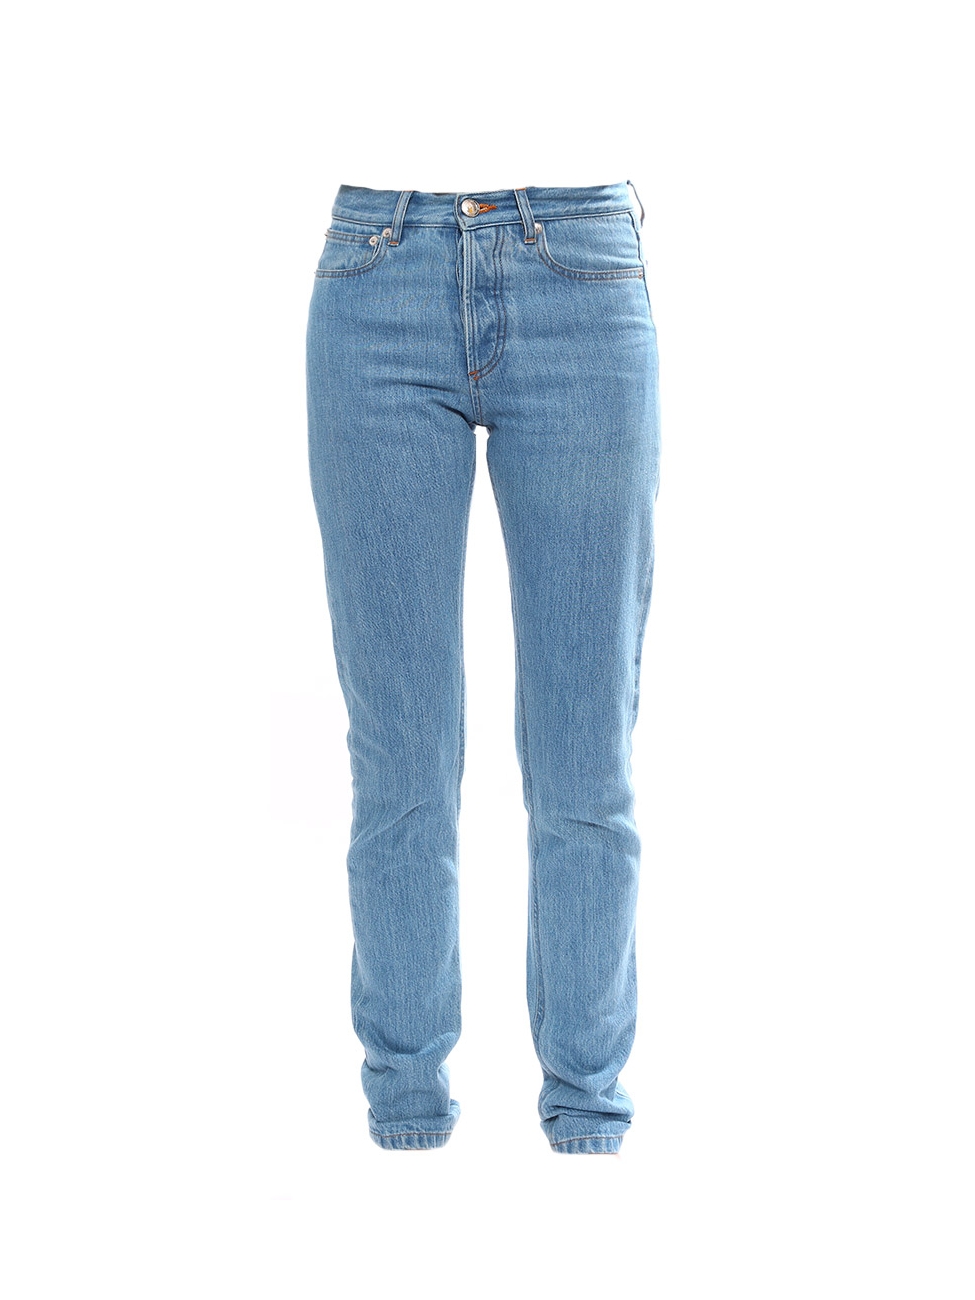 apc high waisted jeans